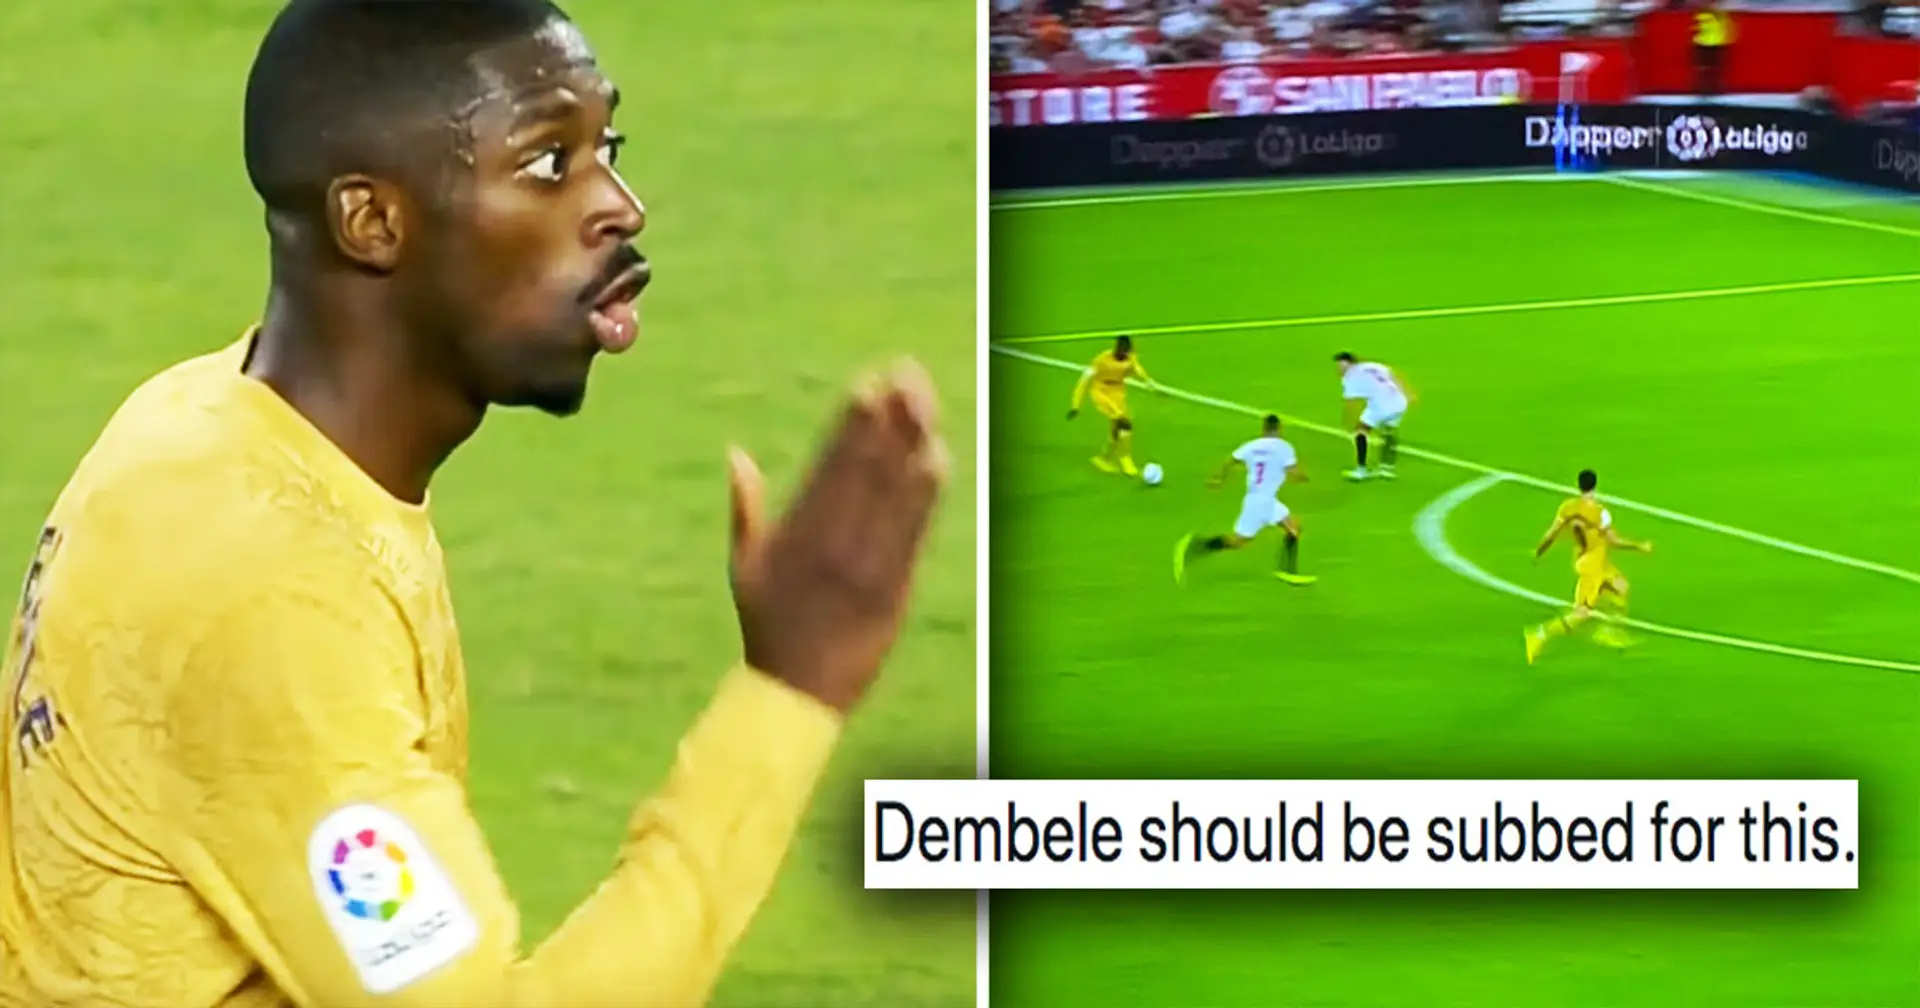 "Wir werden keinen einzigen Pokal gewinnen, wenn wir so spielen": Fans kritisieren Dembele für eine Episode im Spiel gegen Sevilla 